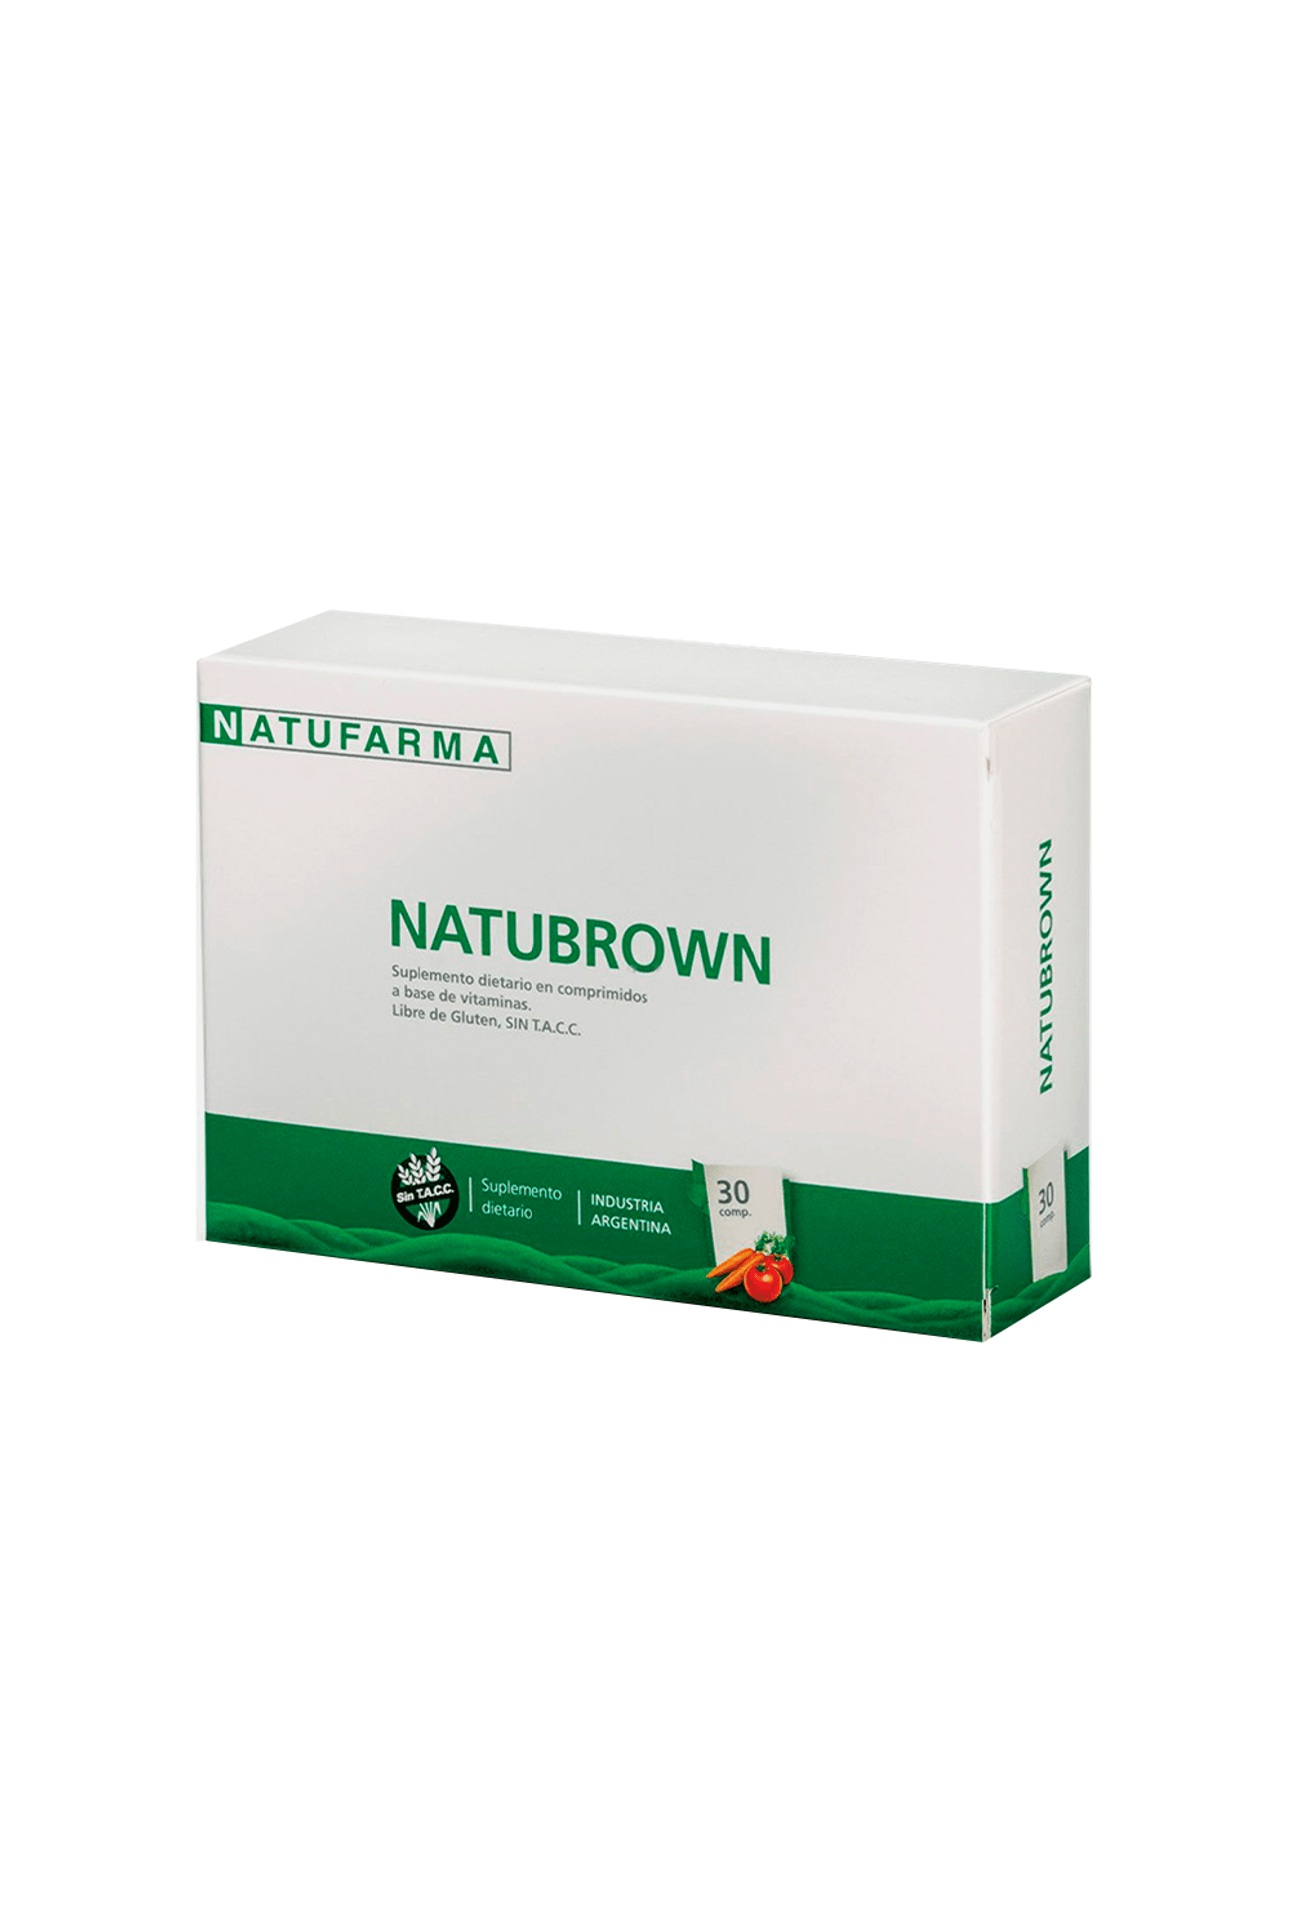 38787_Natufarma-Natubrown-x-30-Comprimidos_img1